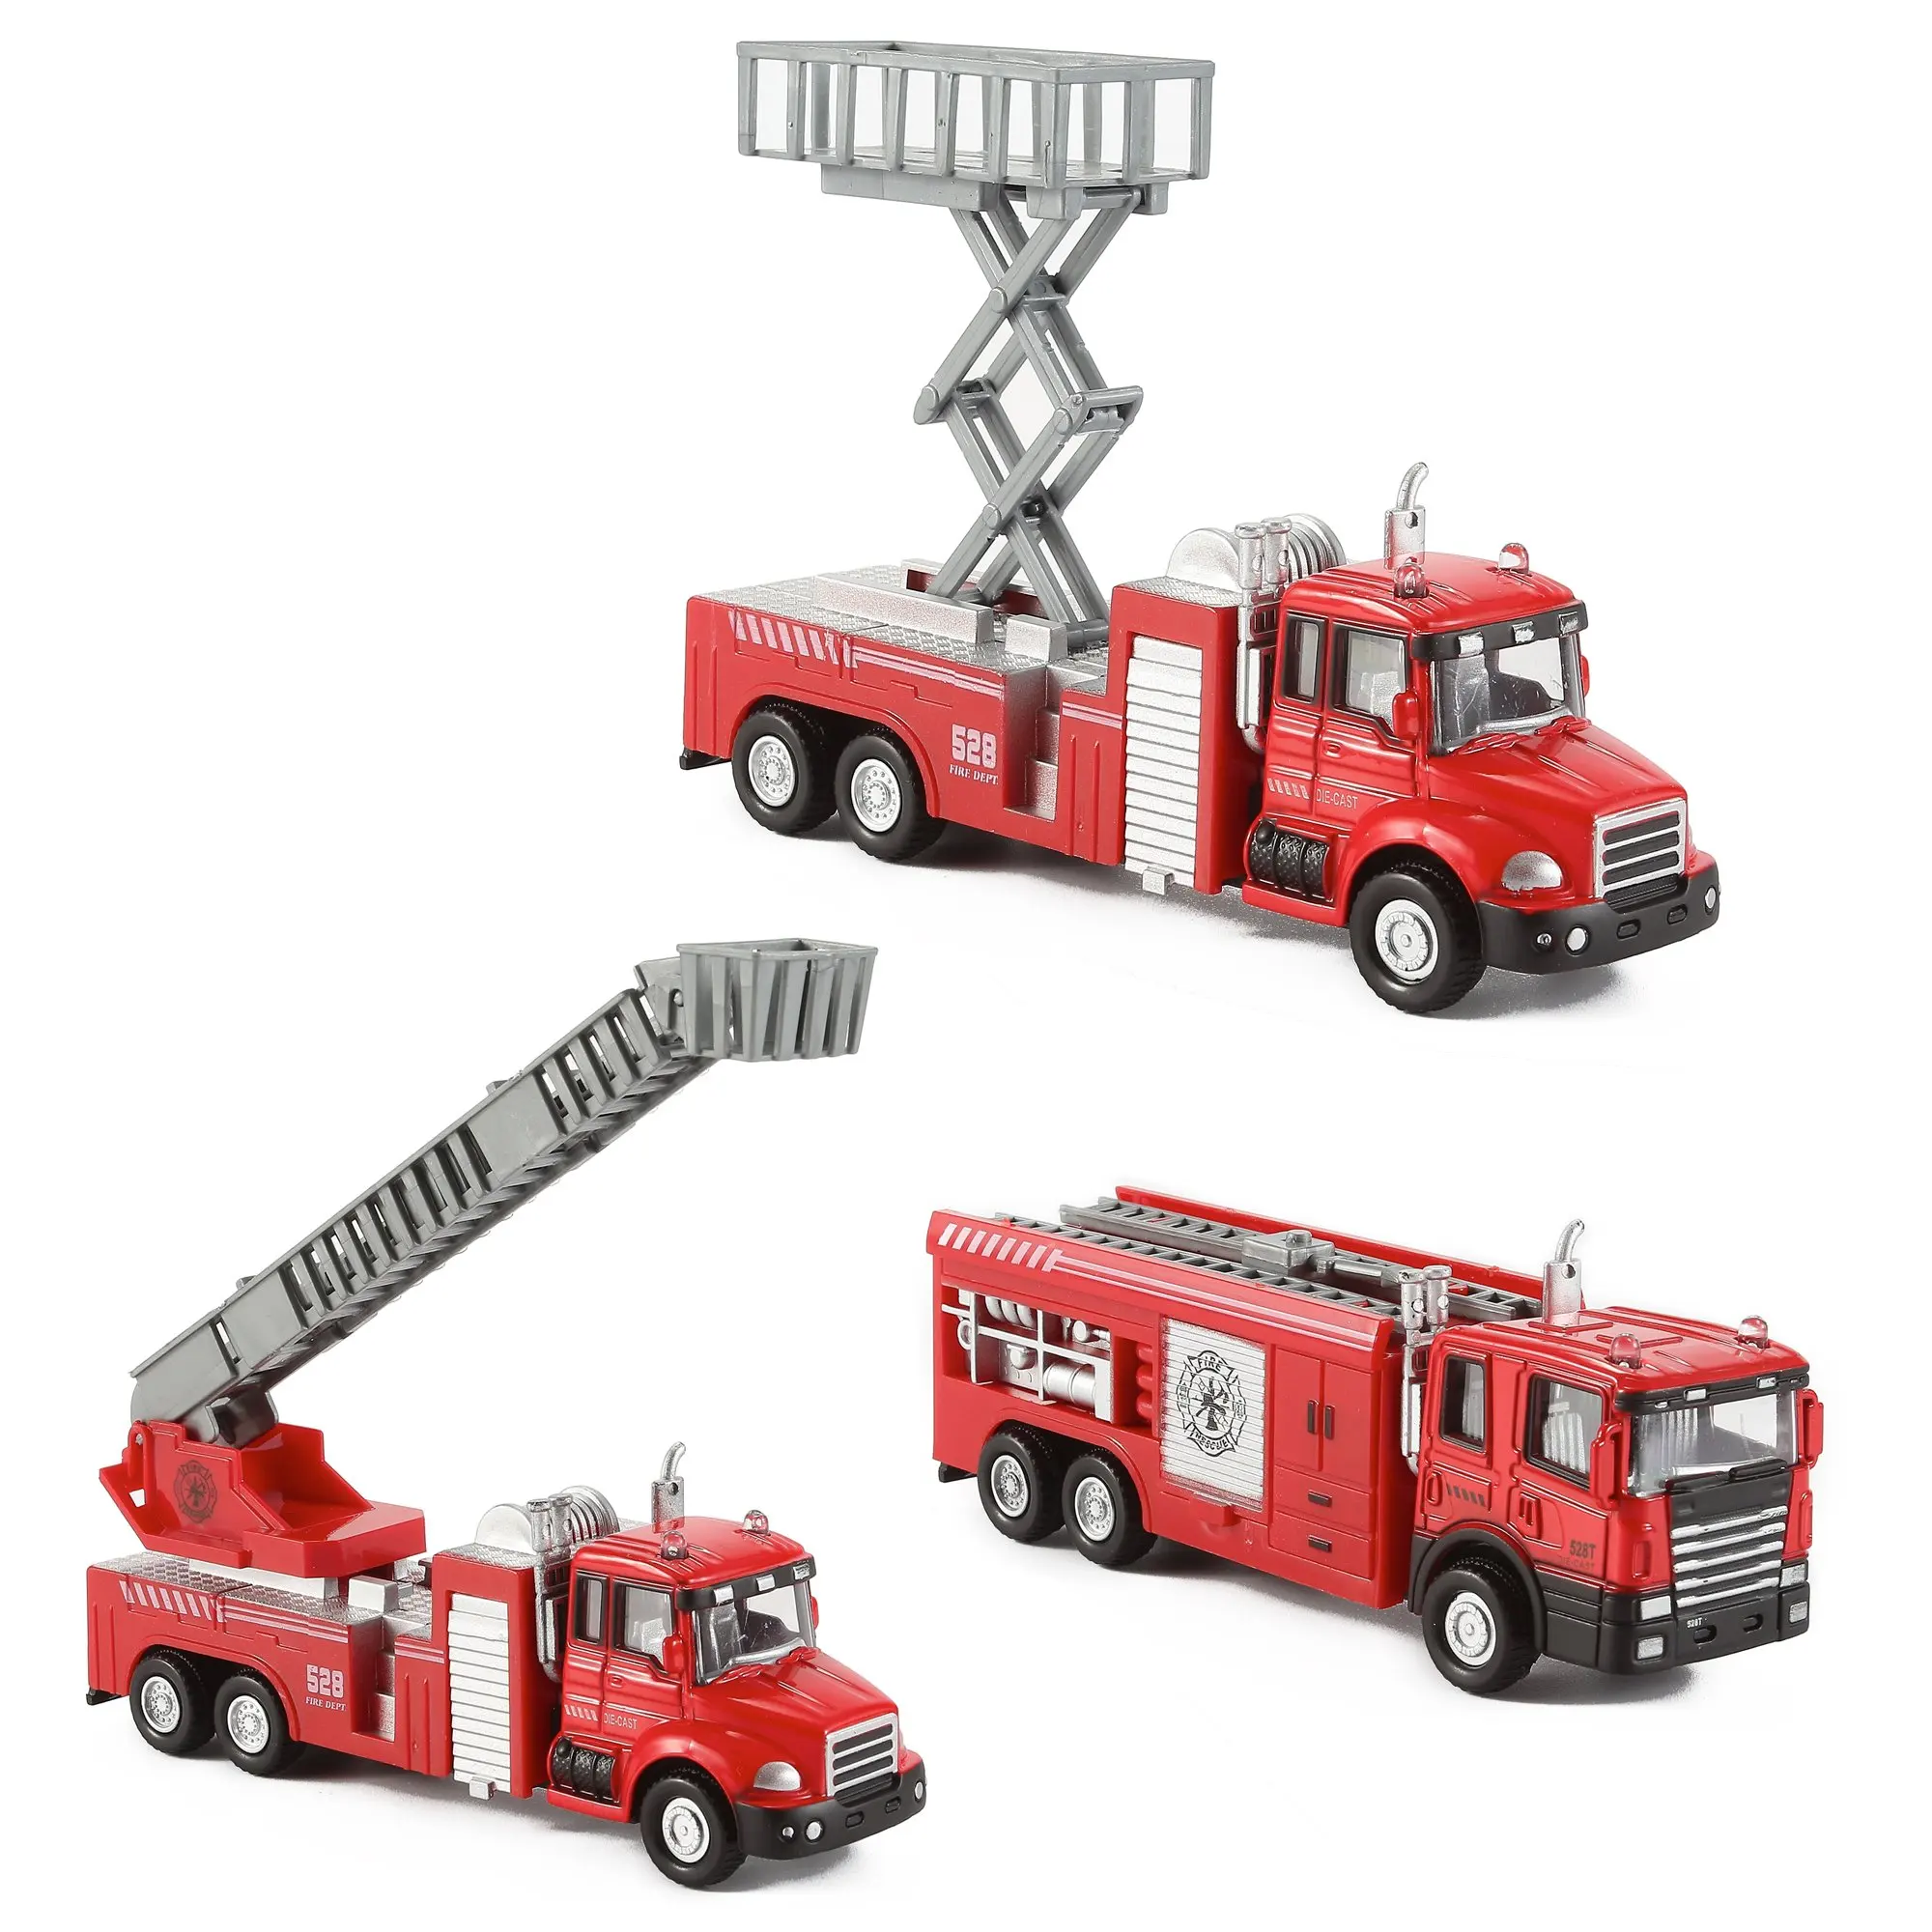 Маленькая пожарная машинка. Конструктор Boyuan Toys 8755 пожарная машина. Пожарная машина Metz игрушка. Matchbox пожарная машина трансформер. Пожарная машинка (20 см) Fire-Fighting vehicle.